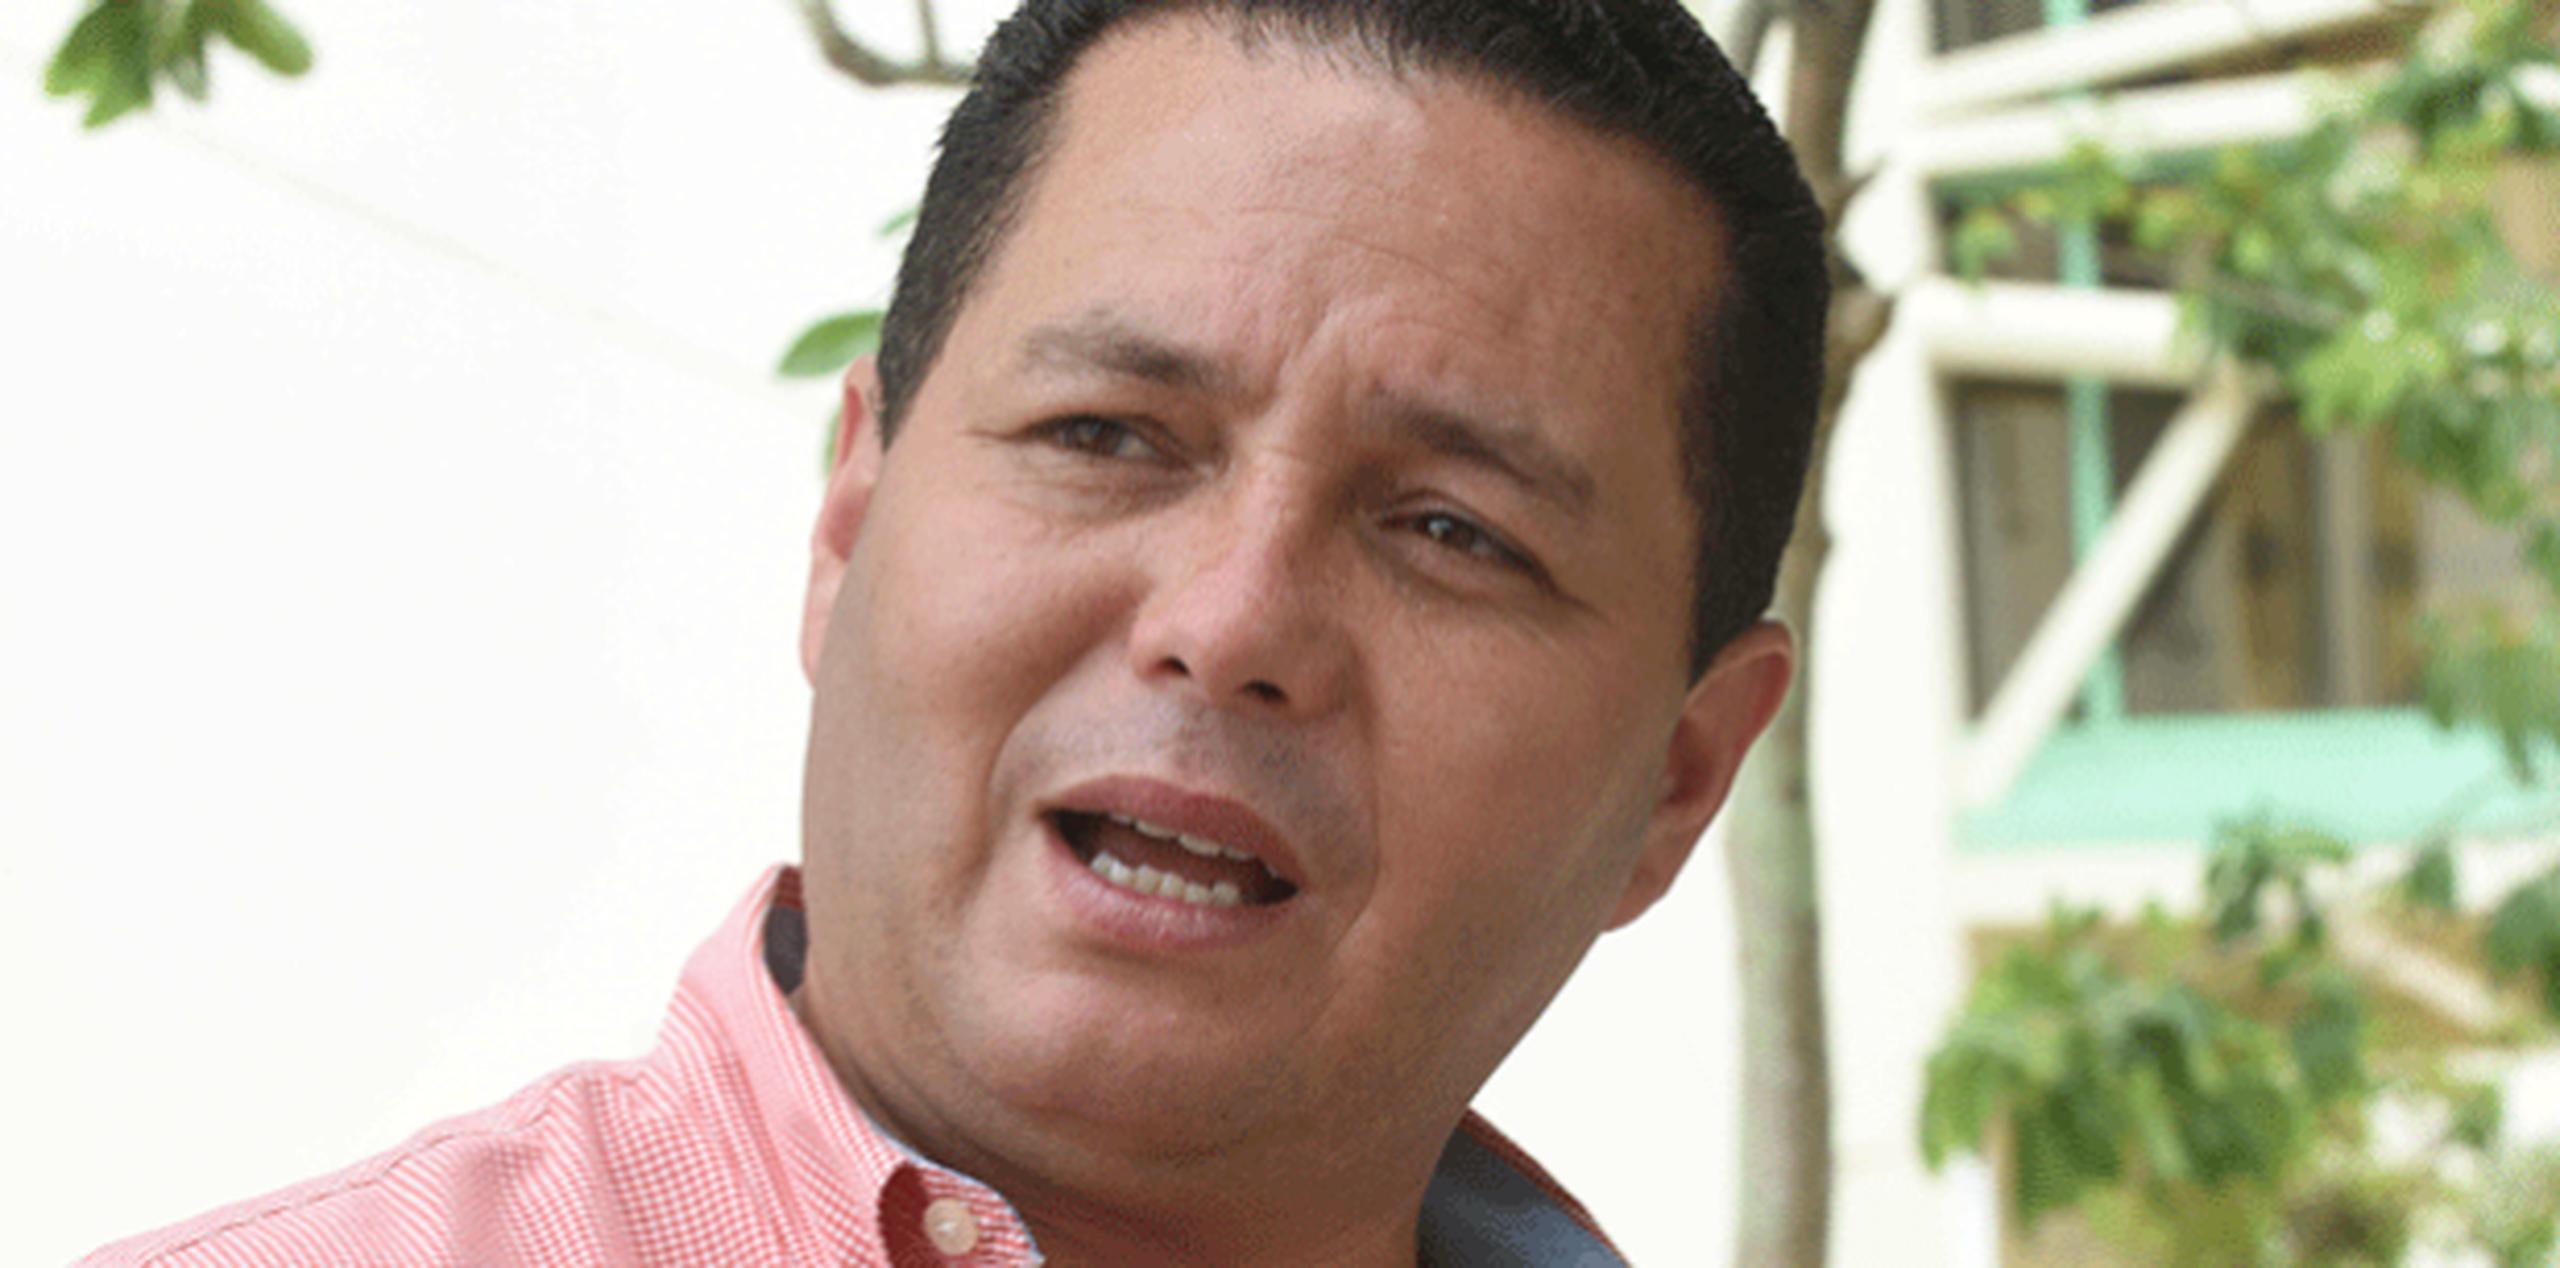 El alcalde de Guaynabo, aseguró que podrían tener acceso a fondos para sufragar los daños ocasionados por el huracán. (Para Zona Urbana / Ingrid Torres)